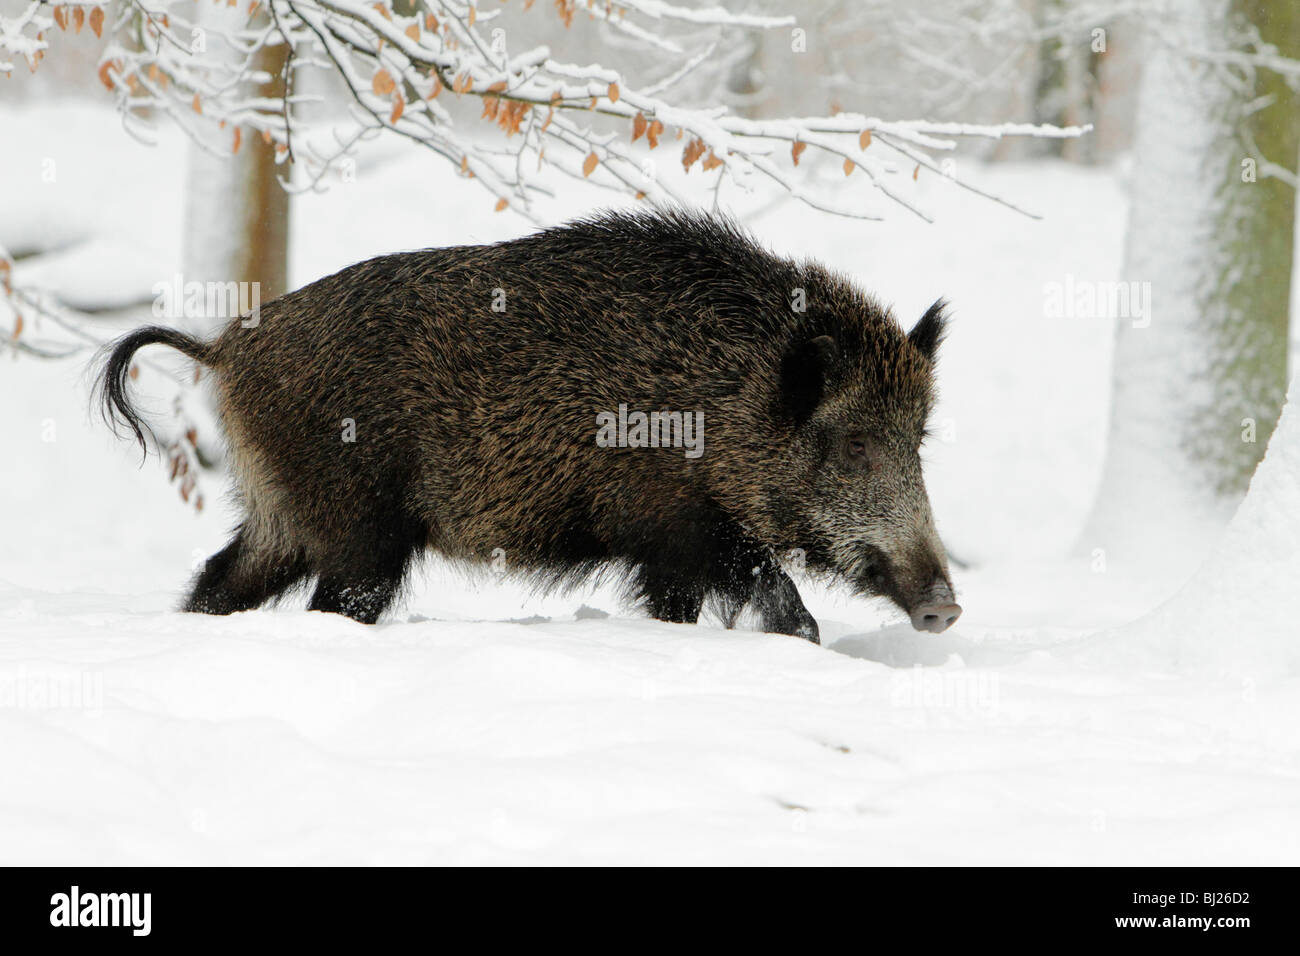 El jabalí, Sus scrofa, siembre caminando a través del bosque cubierto de nieve, Alemania Foto de stock